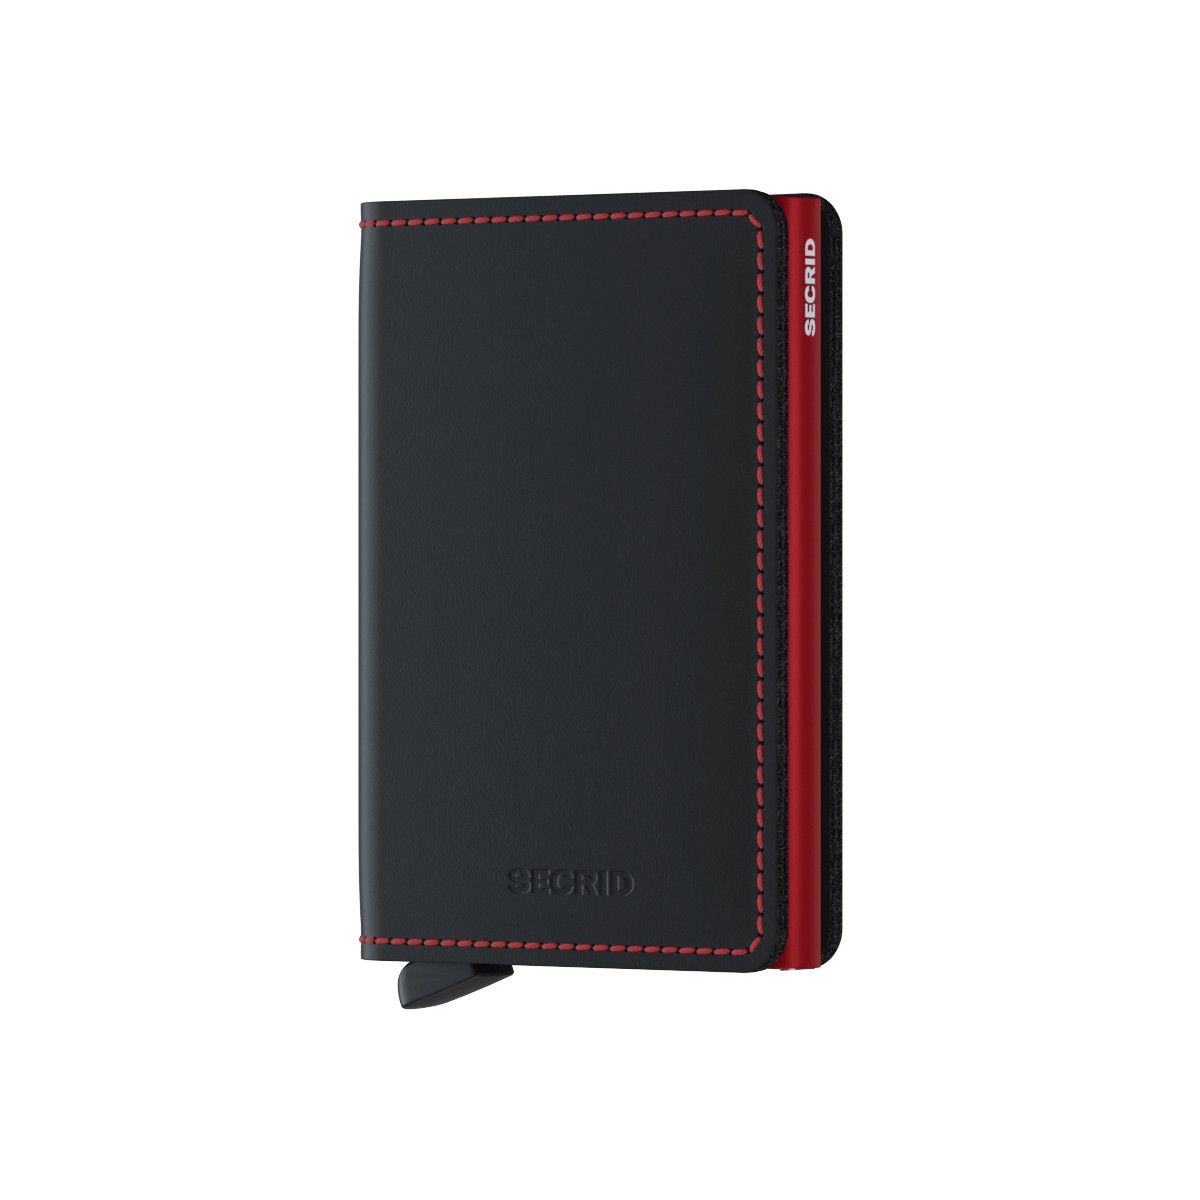 セクリッド スリムウォレット 財布 メンズ ブラック レッド シンプル ミニウォレット Secrid Slimwallet black red 並行輸入品 ブランド